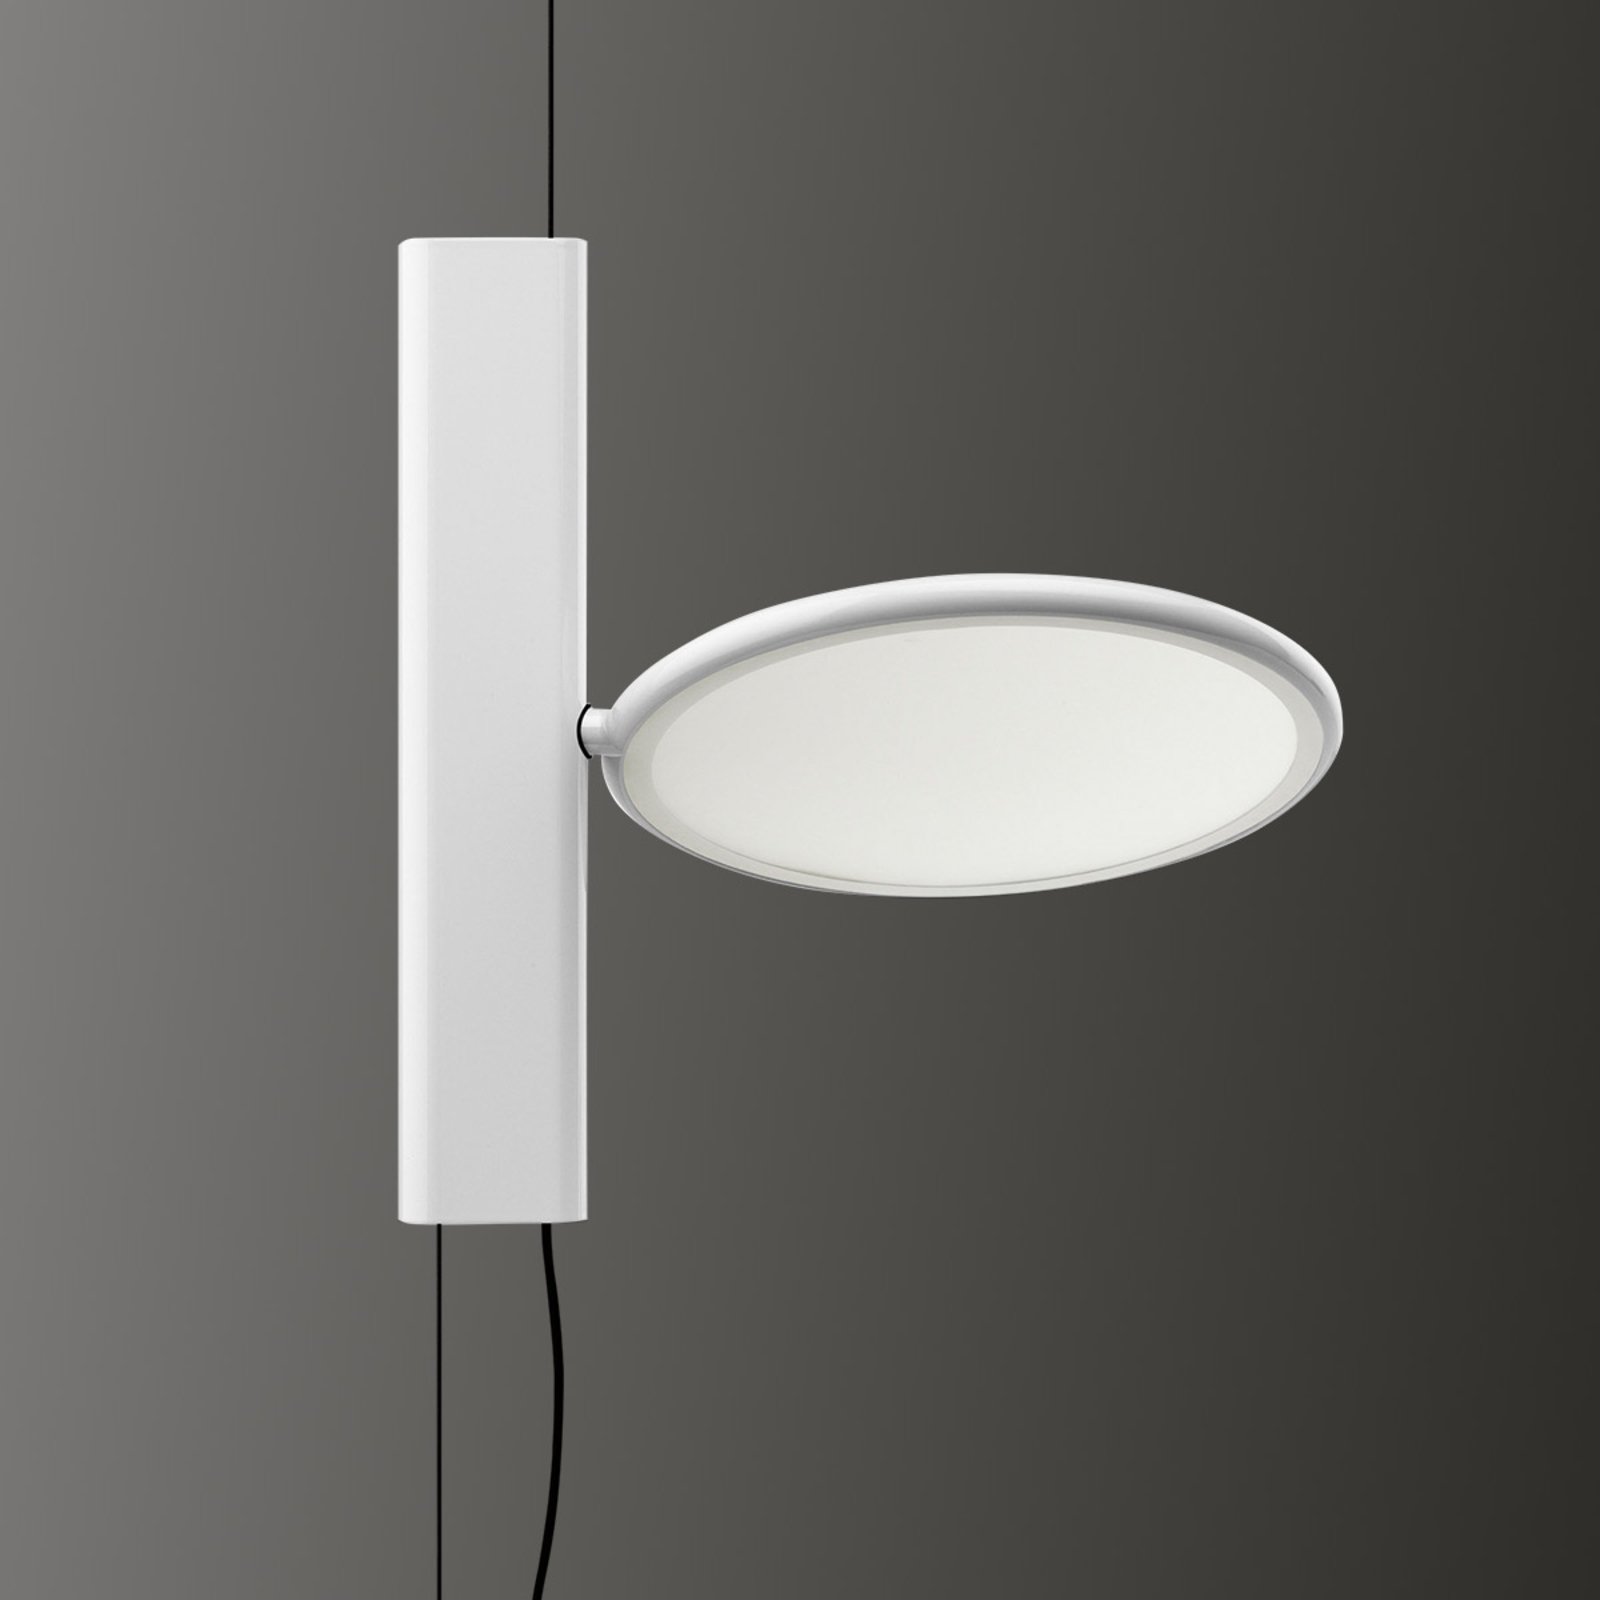 FLOS OK - stående LED-hengelampe i hvitt